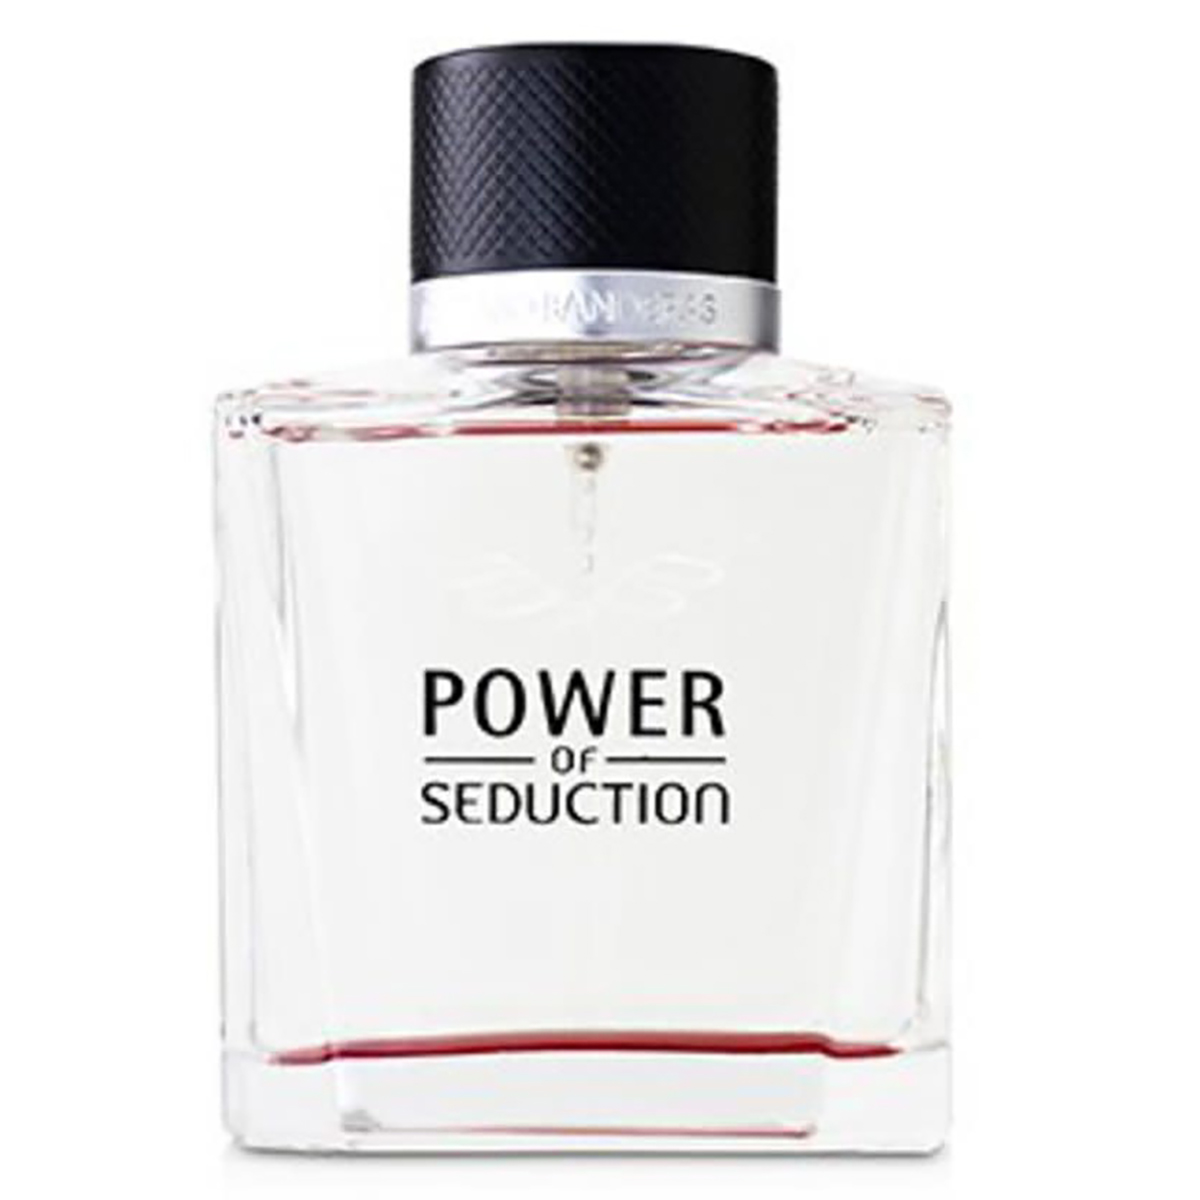 Antonio Banderas Mens Power Of Seduction Edt Spray 3.4 oz Fragrances 8411061913024 In N,a